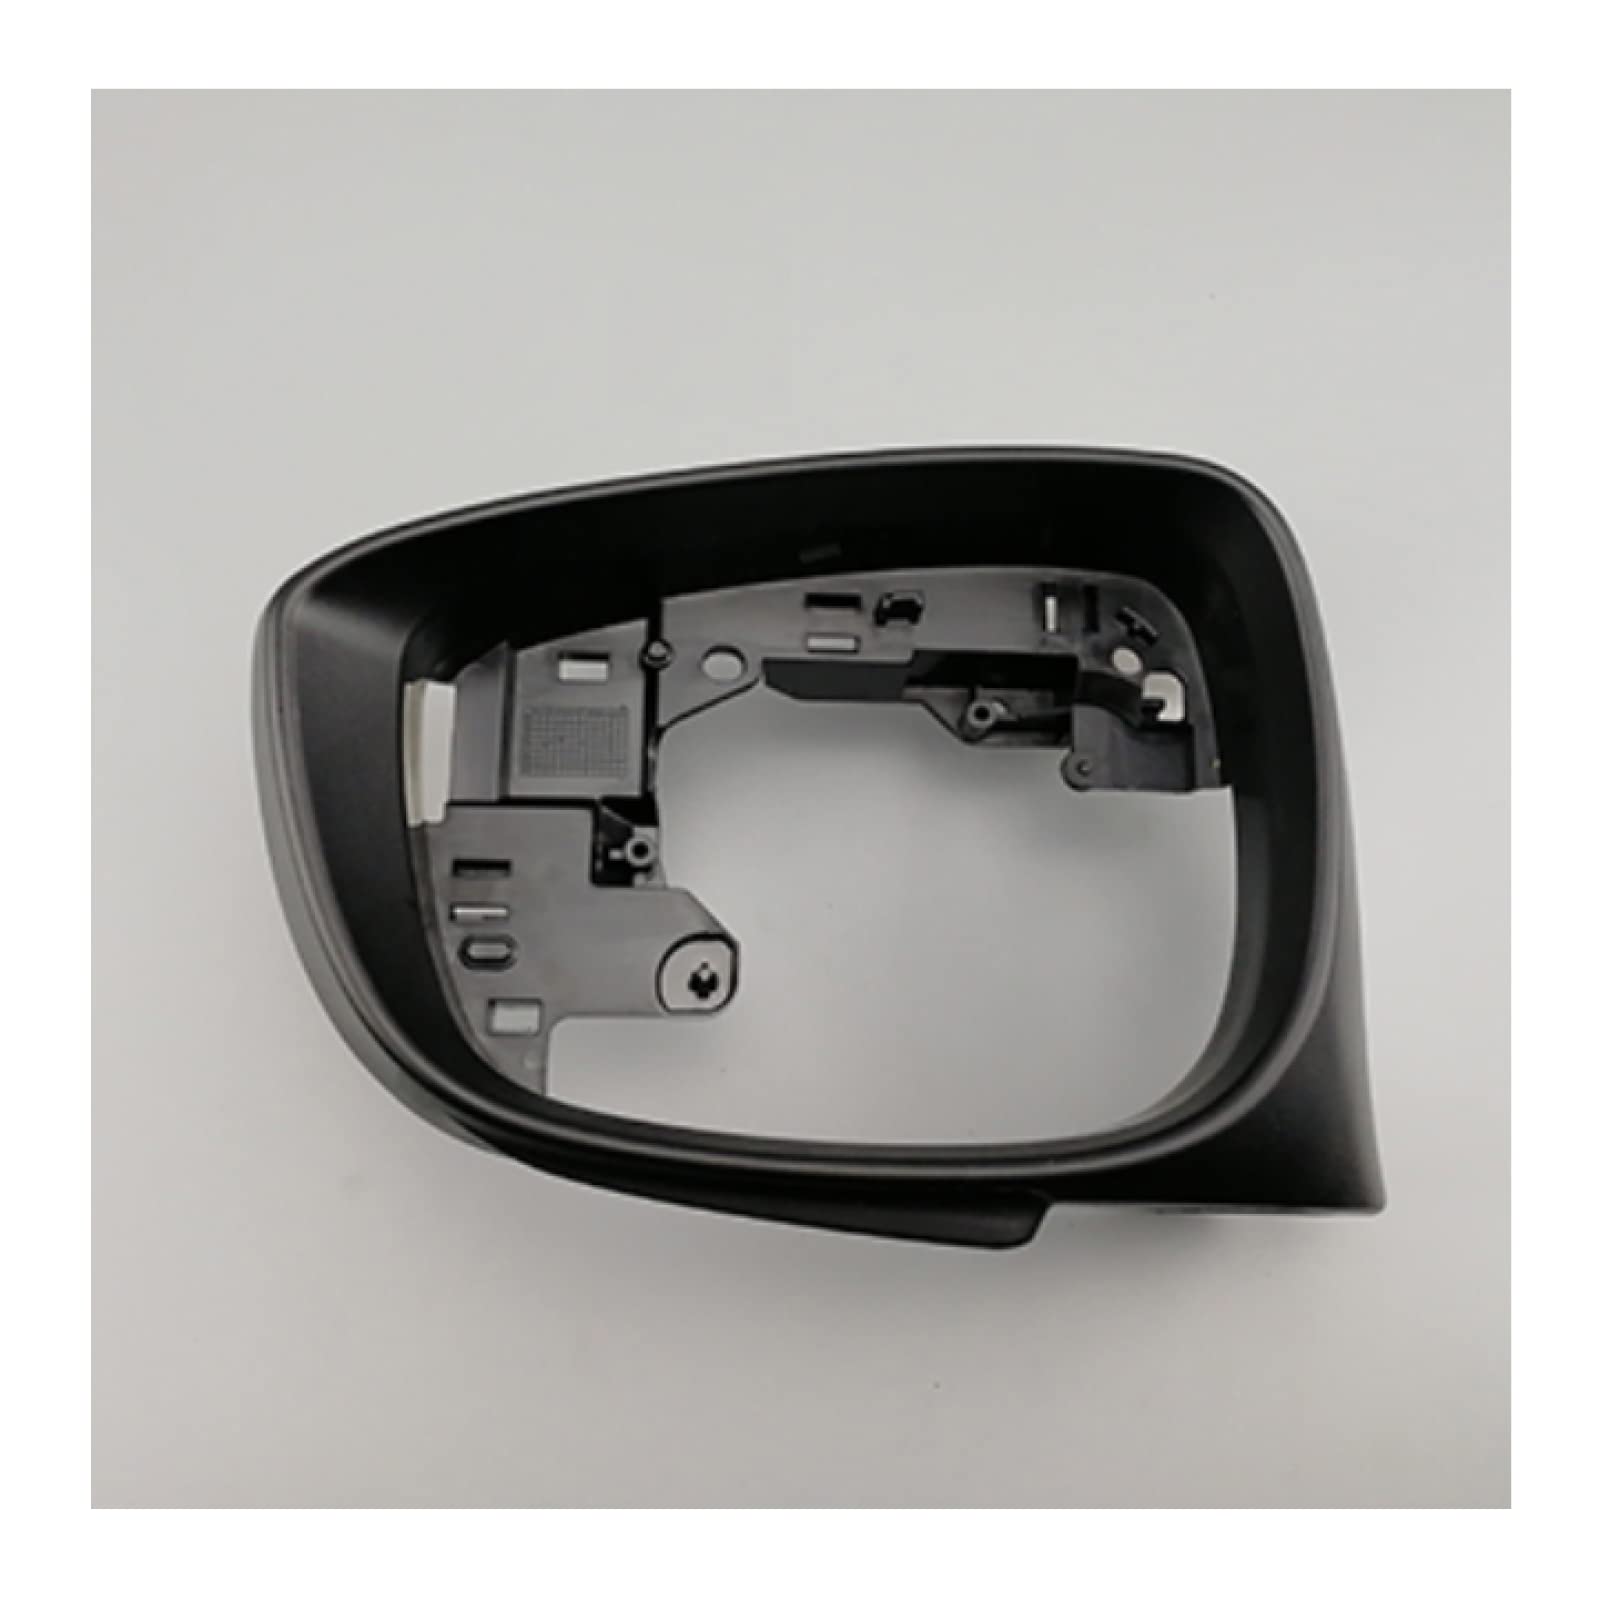 Autozubehör Außenspiegelgehäuse Auto Rearview Bottom Cover Fit für Mazda CX-3 CX-5 Spiegelrahmen,L CX-3 CX-5 von ZHAGV